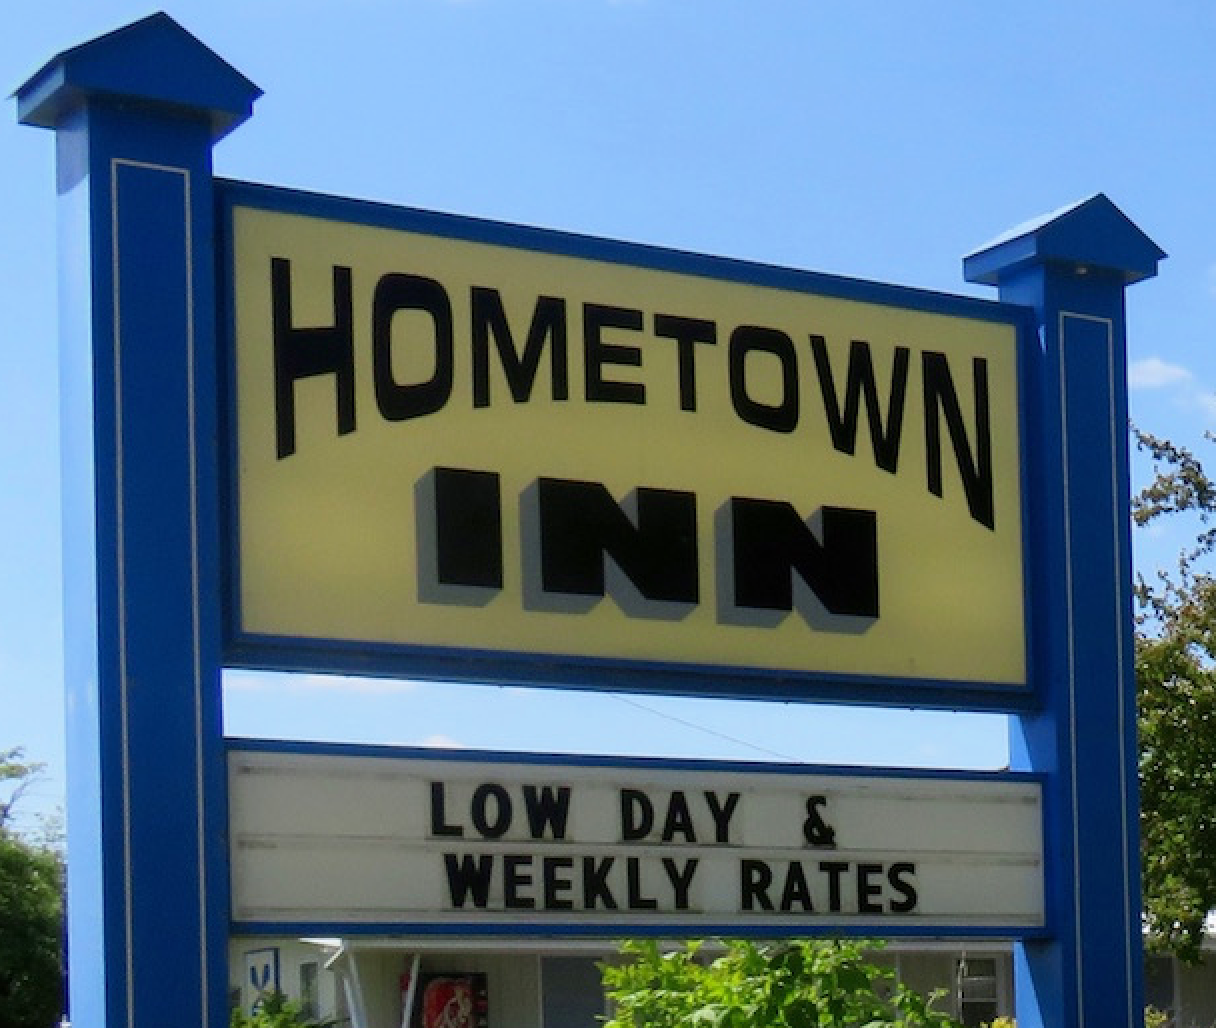 Hometown Inn – Seyahatiniz iÃ§in en iyisini seÃ§menize yardÄ±mcÄ± olacak seyahat yorumlarÄ±, restoranlar ve oteller hakkÄ±nda bilgi sayfasÄ±